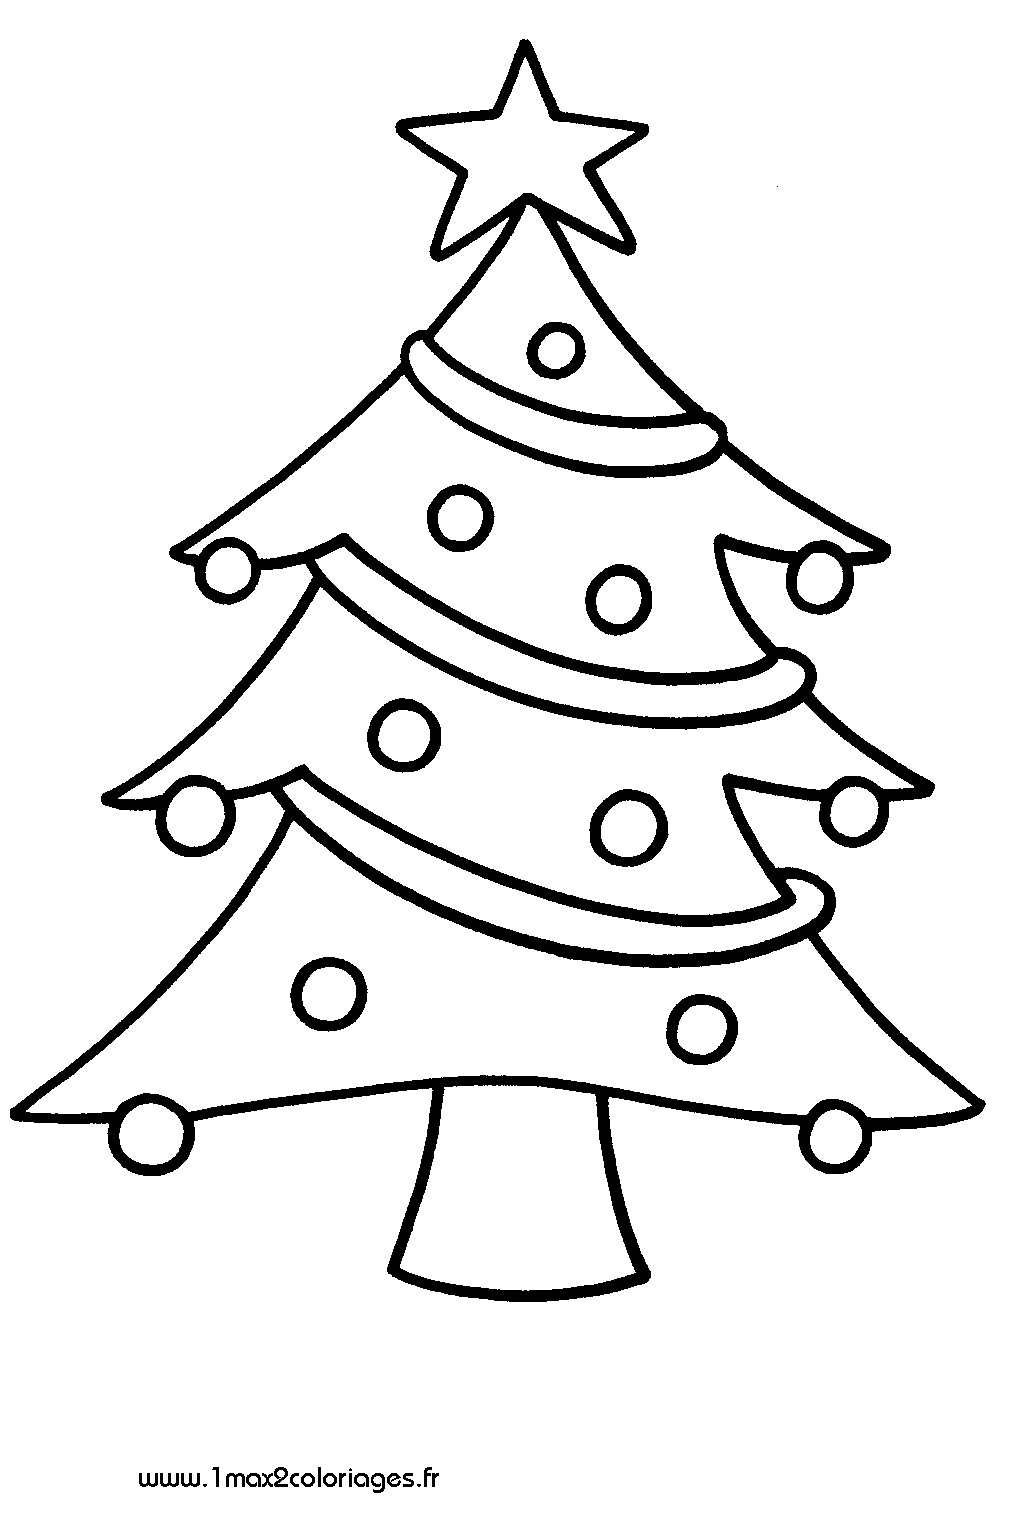 Malvorlage: Weihnachtsbaum (Objekte) #167436 - Kostenlose Malvorlagen zum Ausdrucken